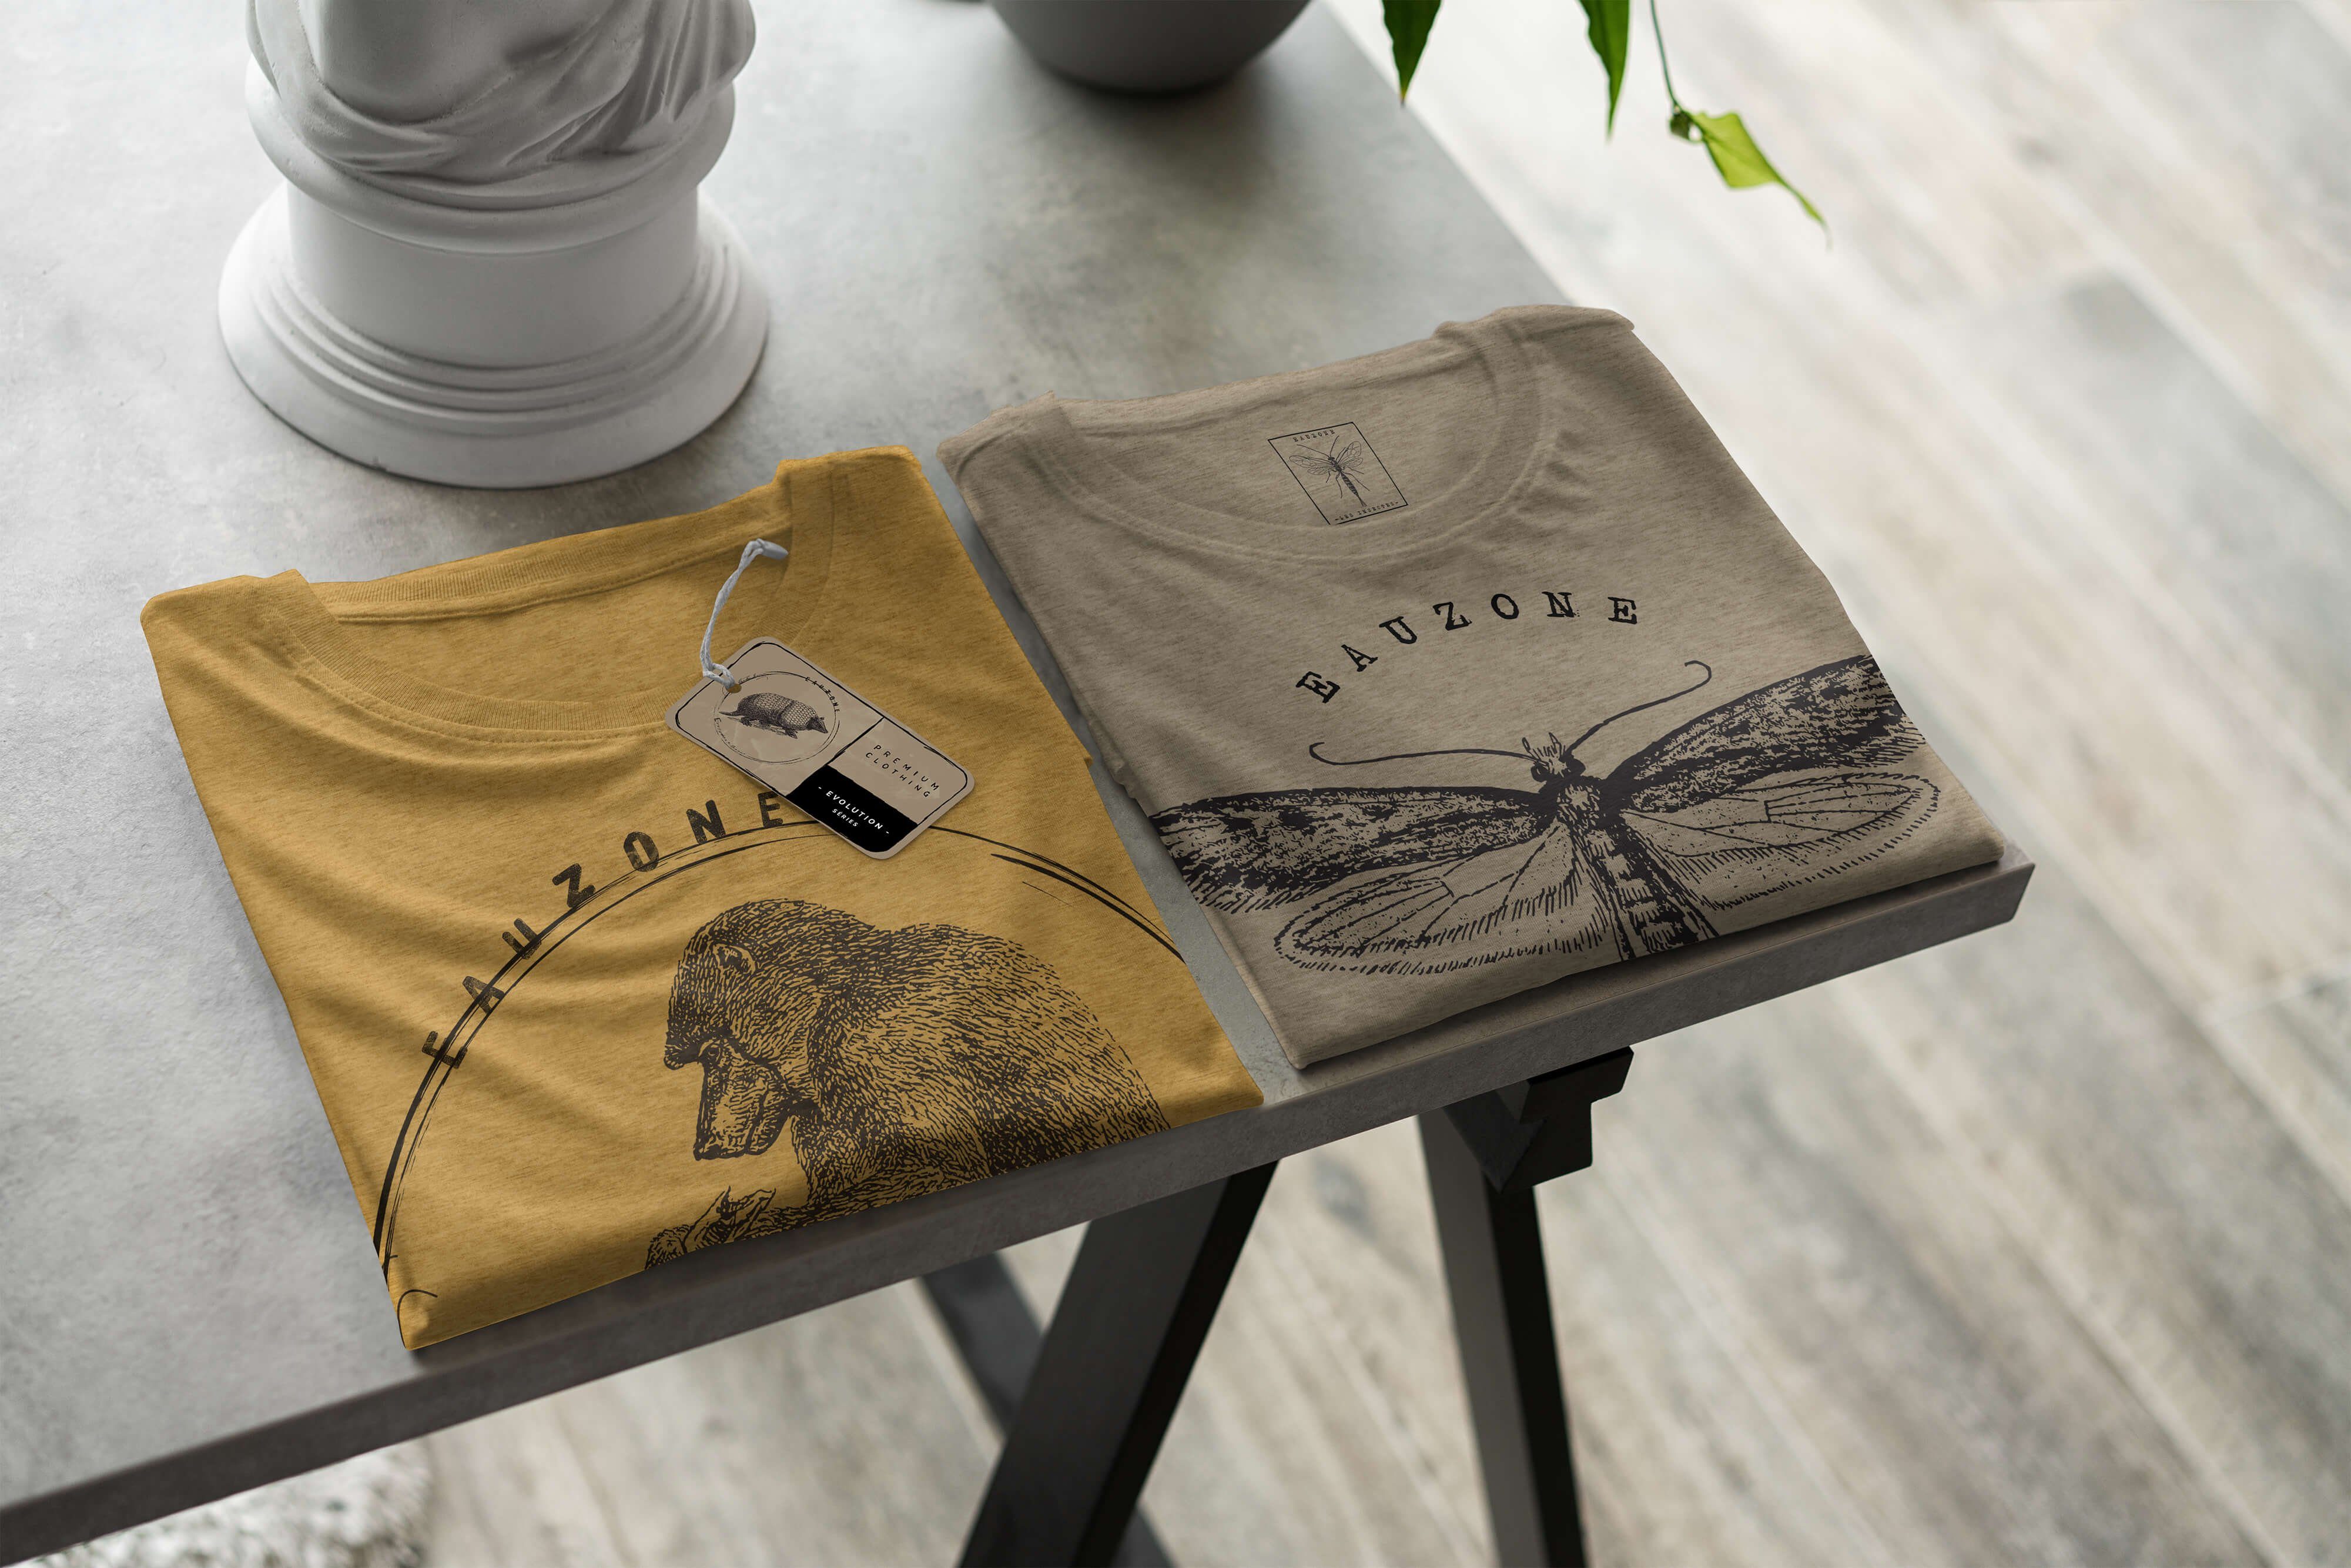 Sinus Art T-Shirt Pavian Herren T-Shirt Evolution Gold Antique